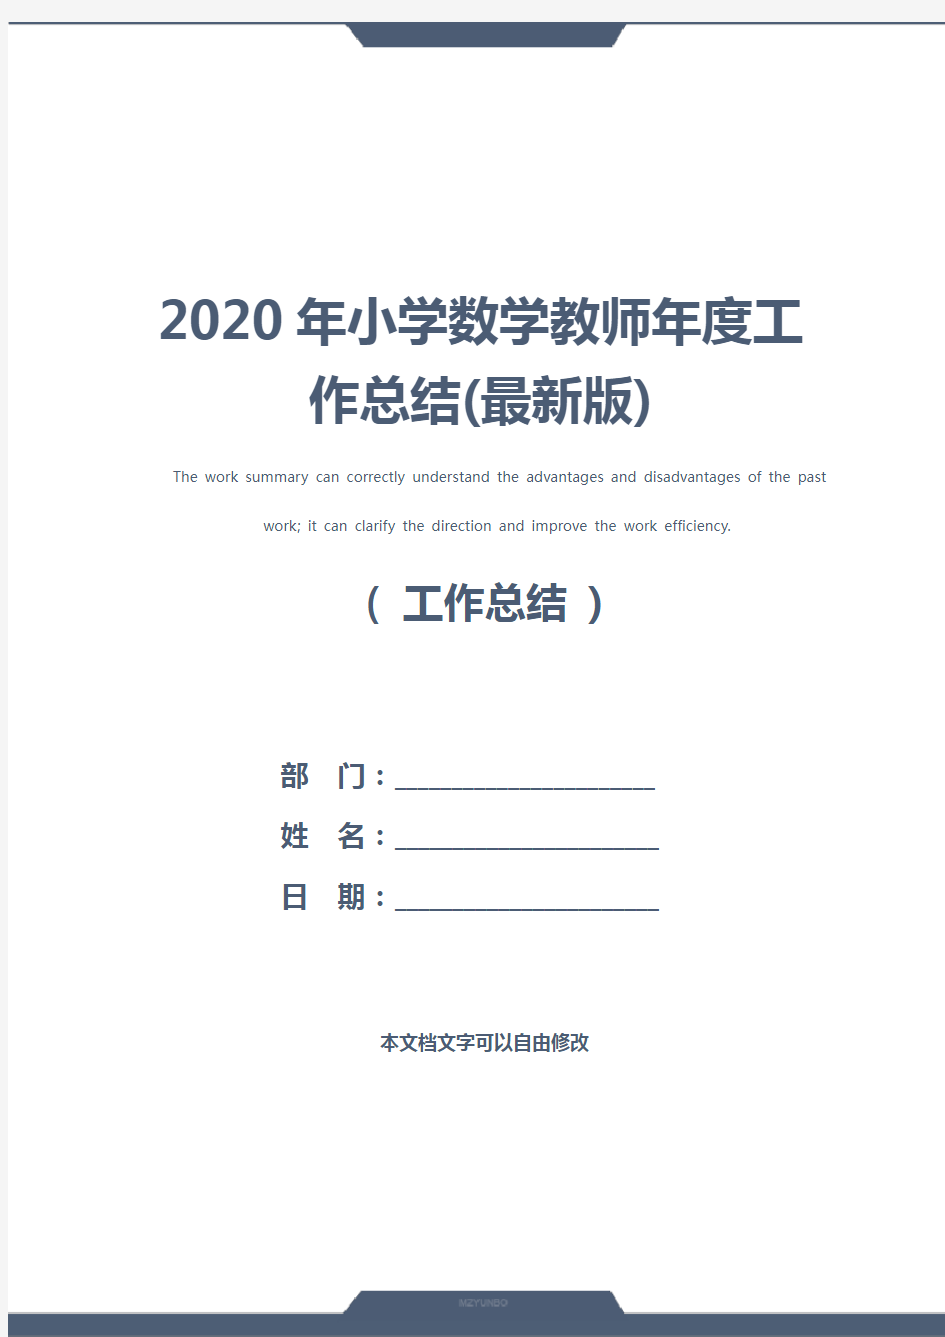 2020年小学数学教师年度工作总结(最新版)